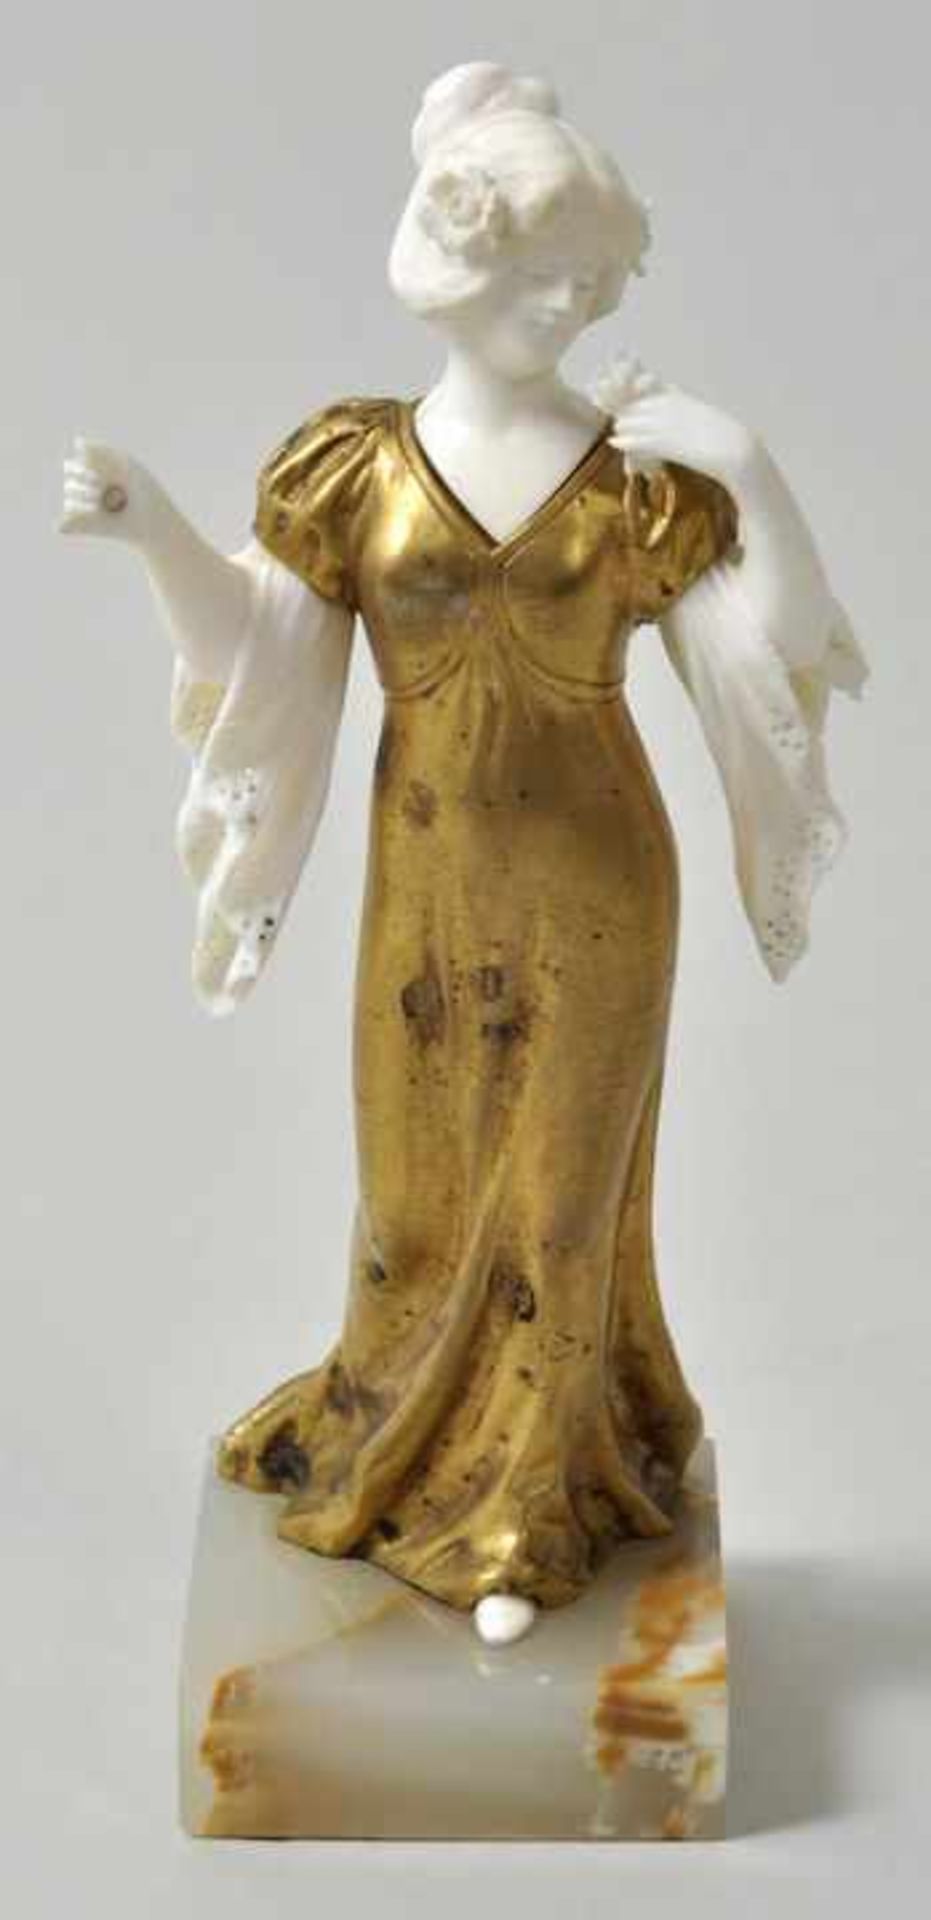 Unbekannt, Ende 19. Jh./ um 1900Jugendstilfigur Junge Frau, schreitend. Bronze/ Elfenbein, auf